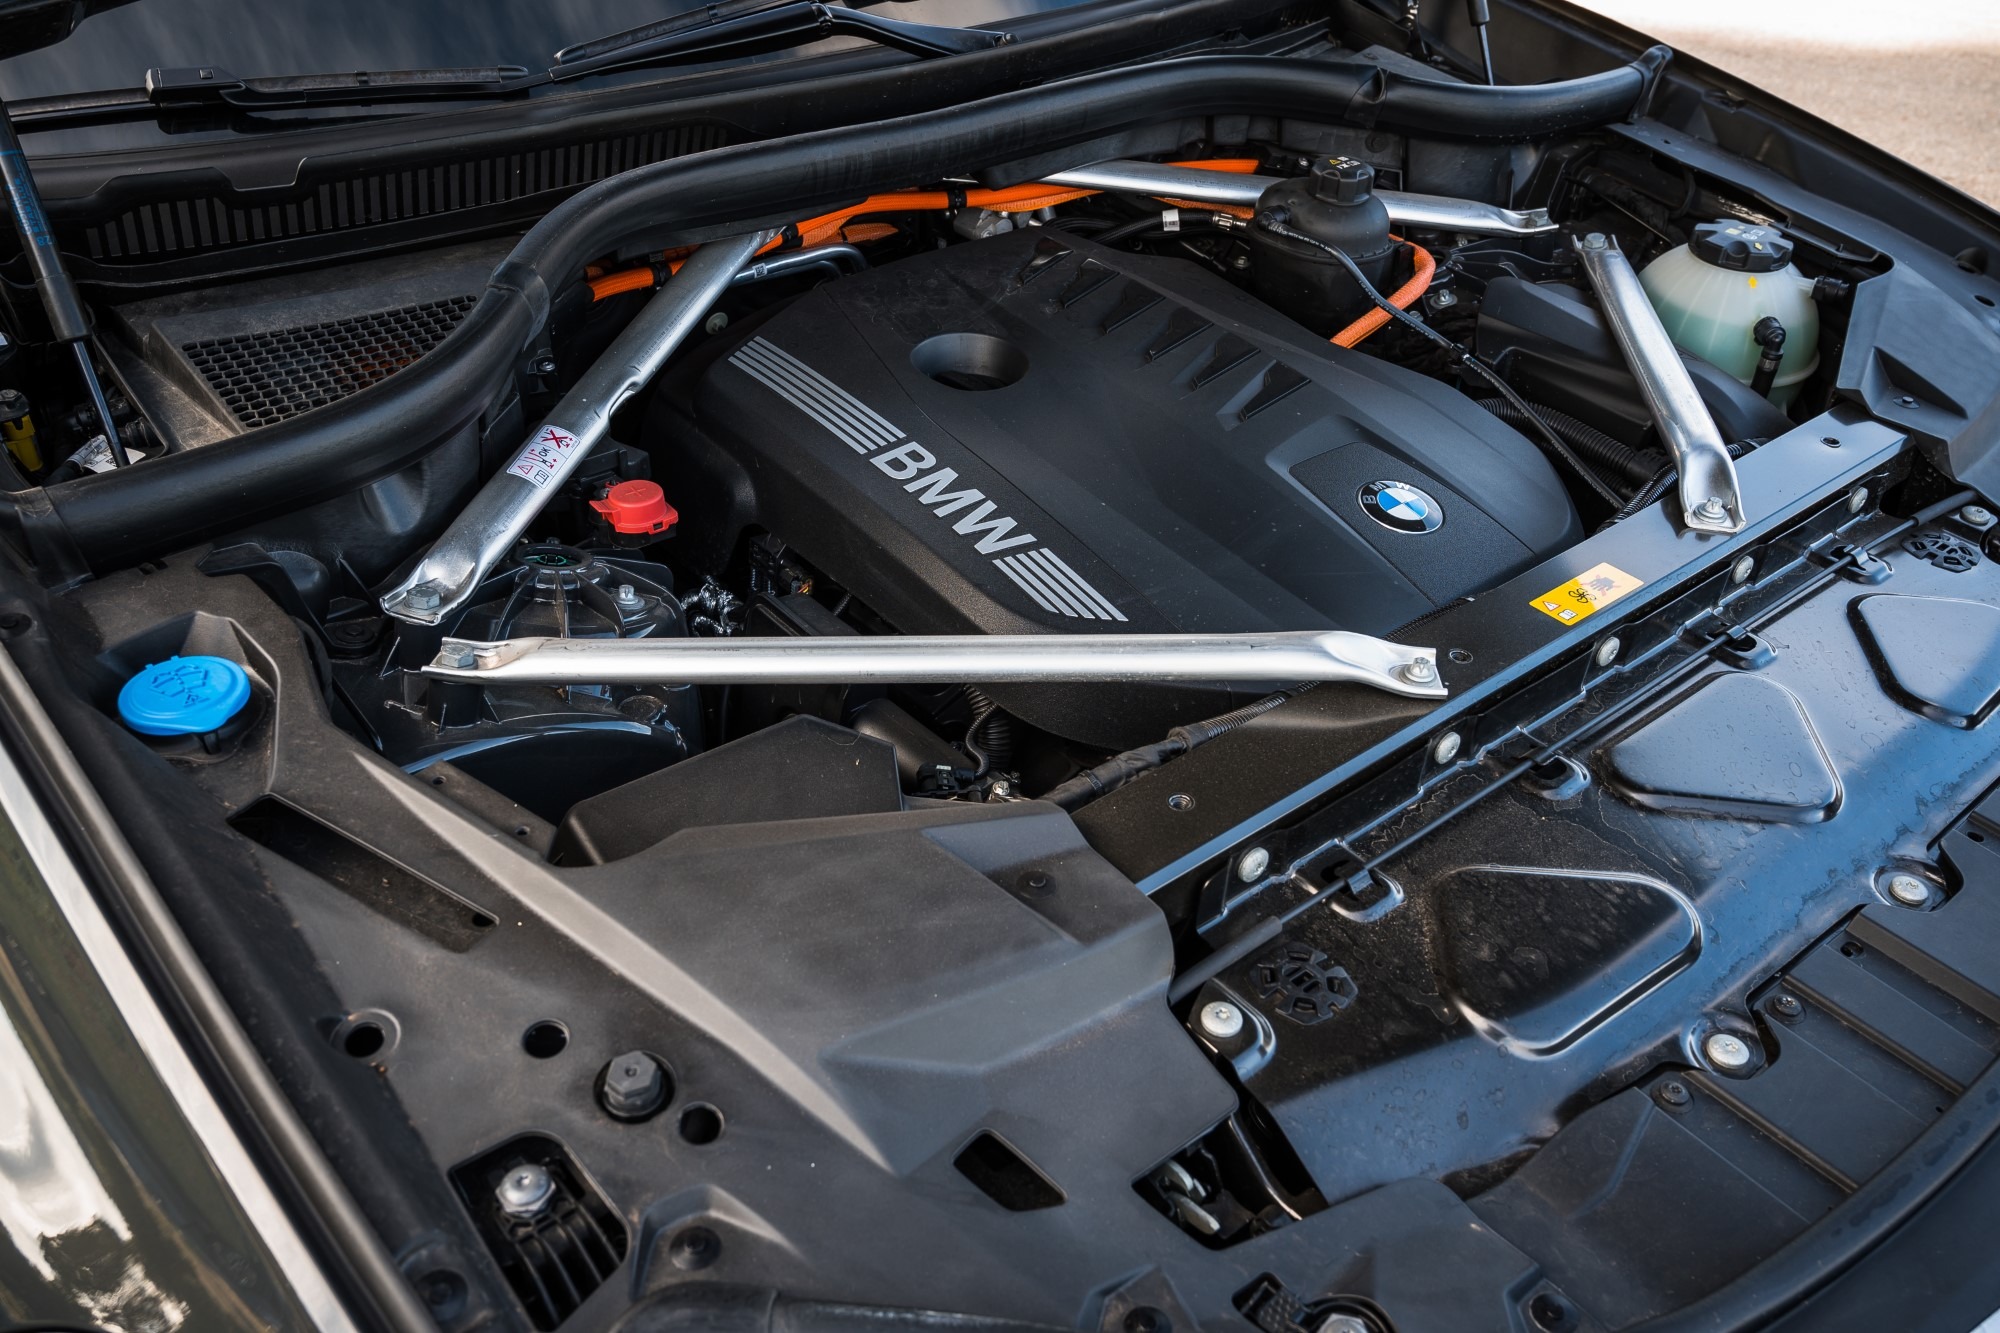 Test: BMW X5 xDrive50e PHEV 490Ps